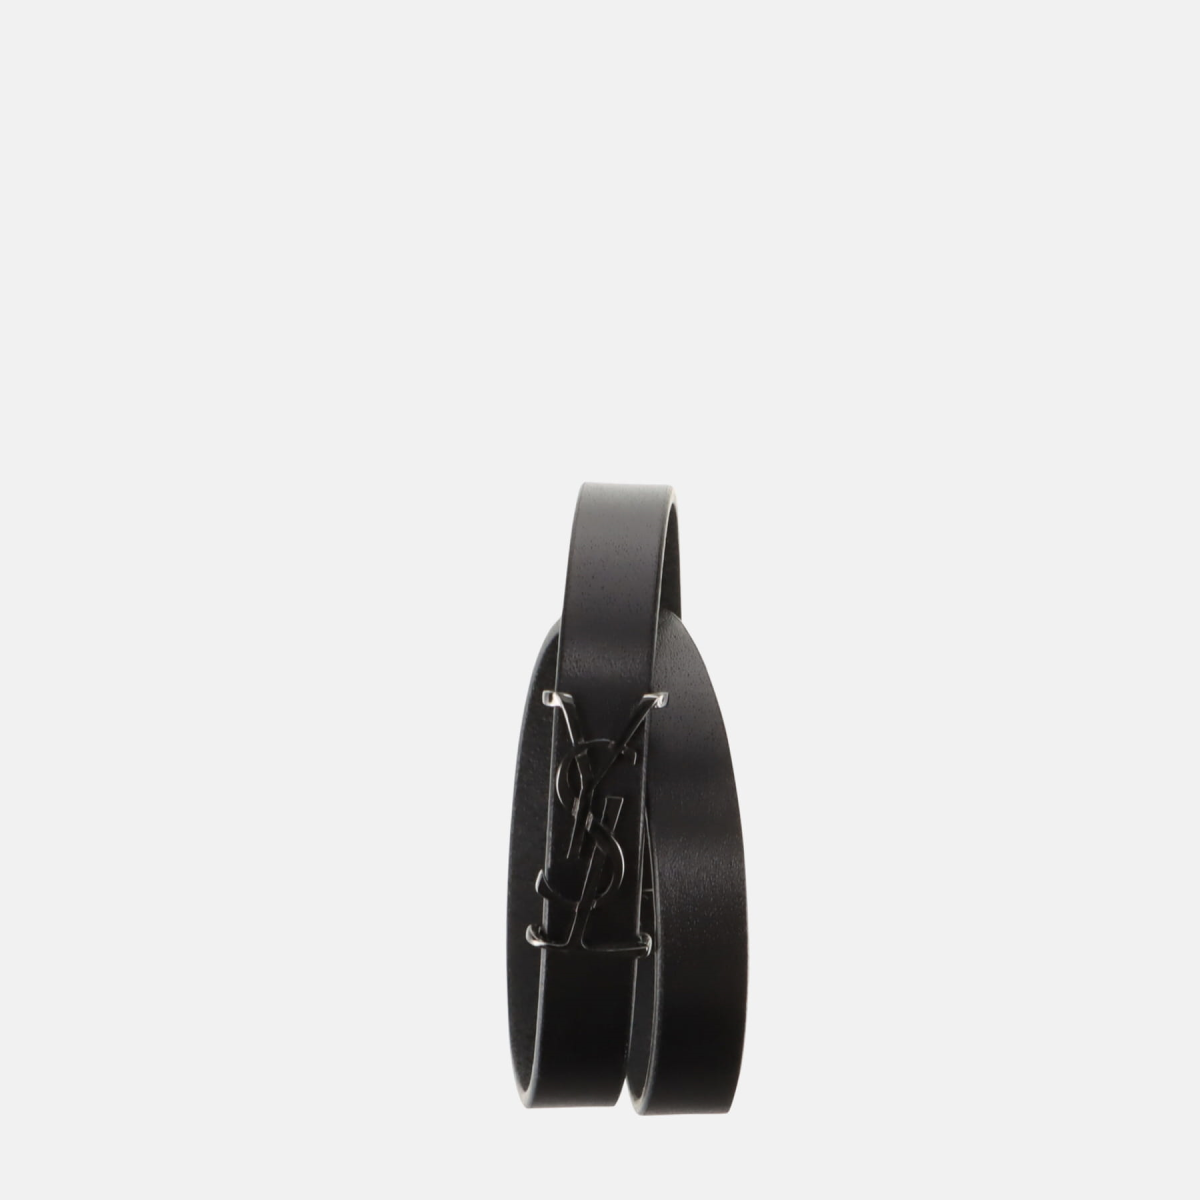 Bracelet Saint Laurent